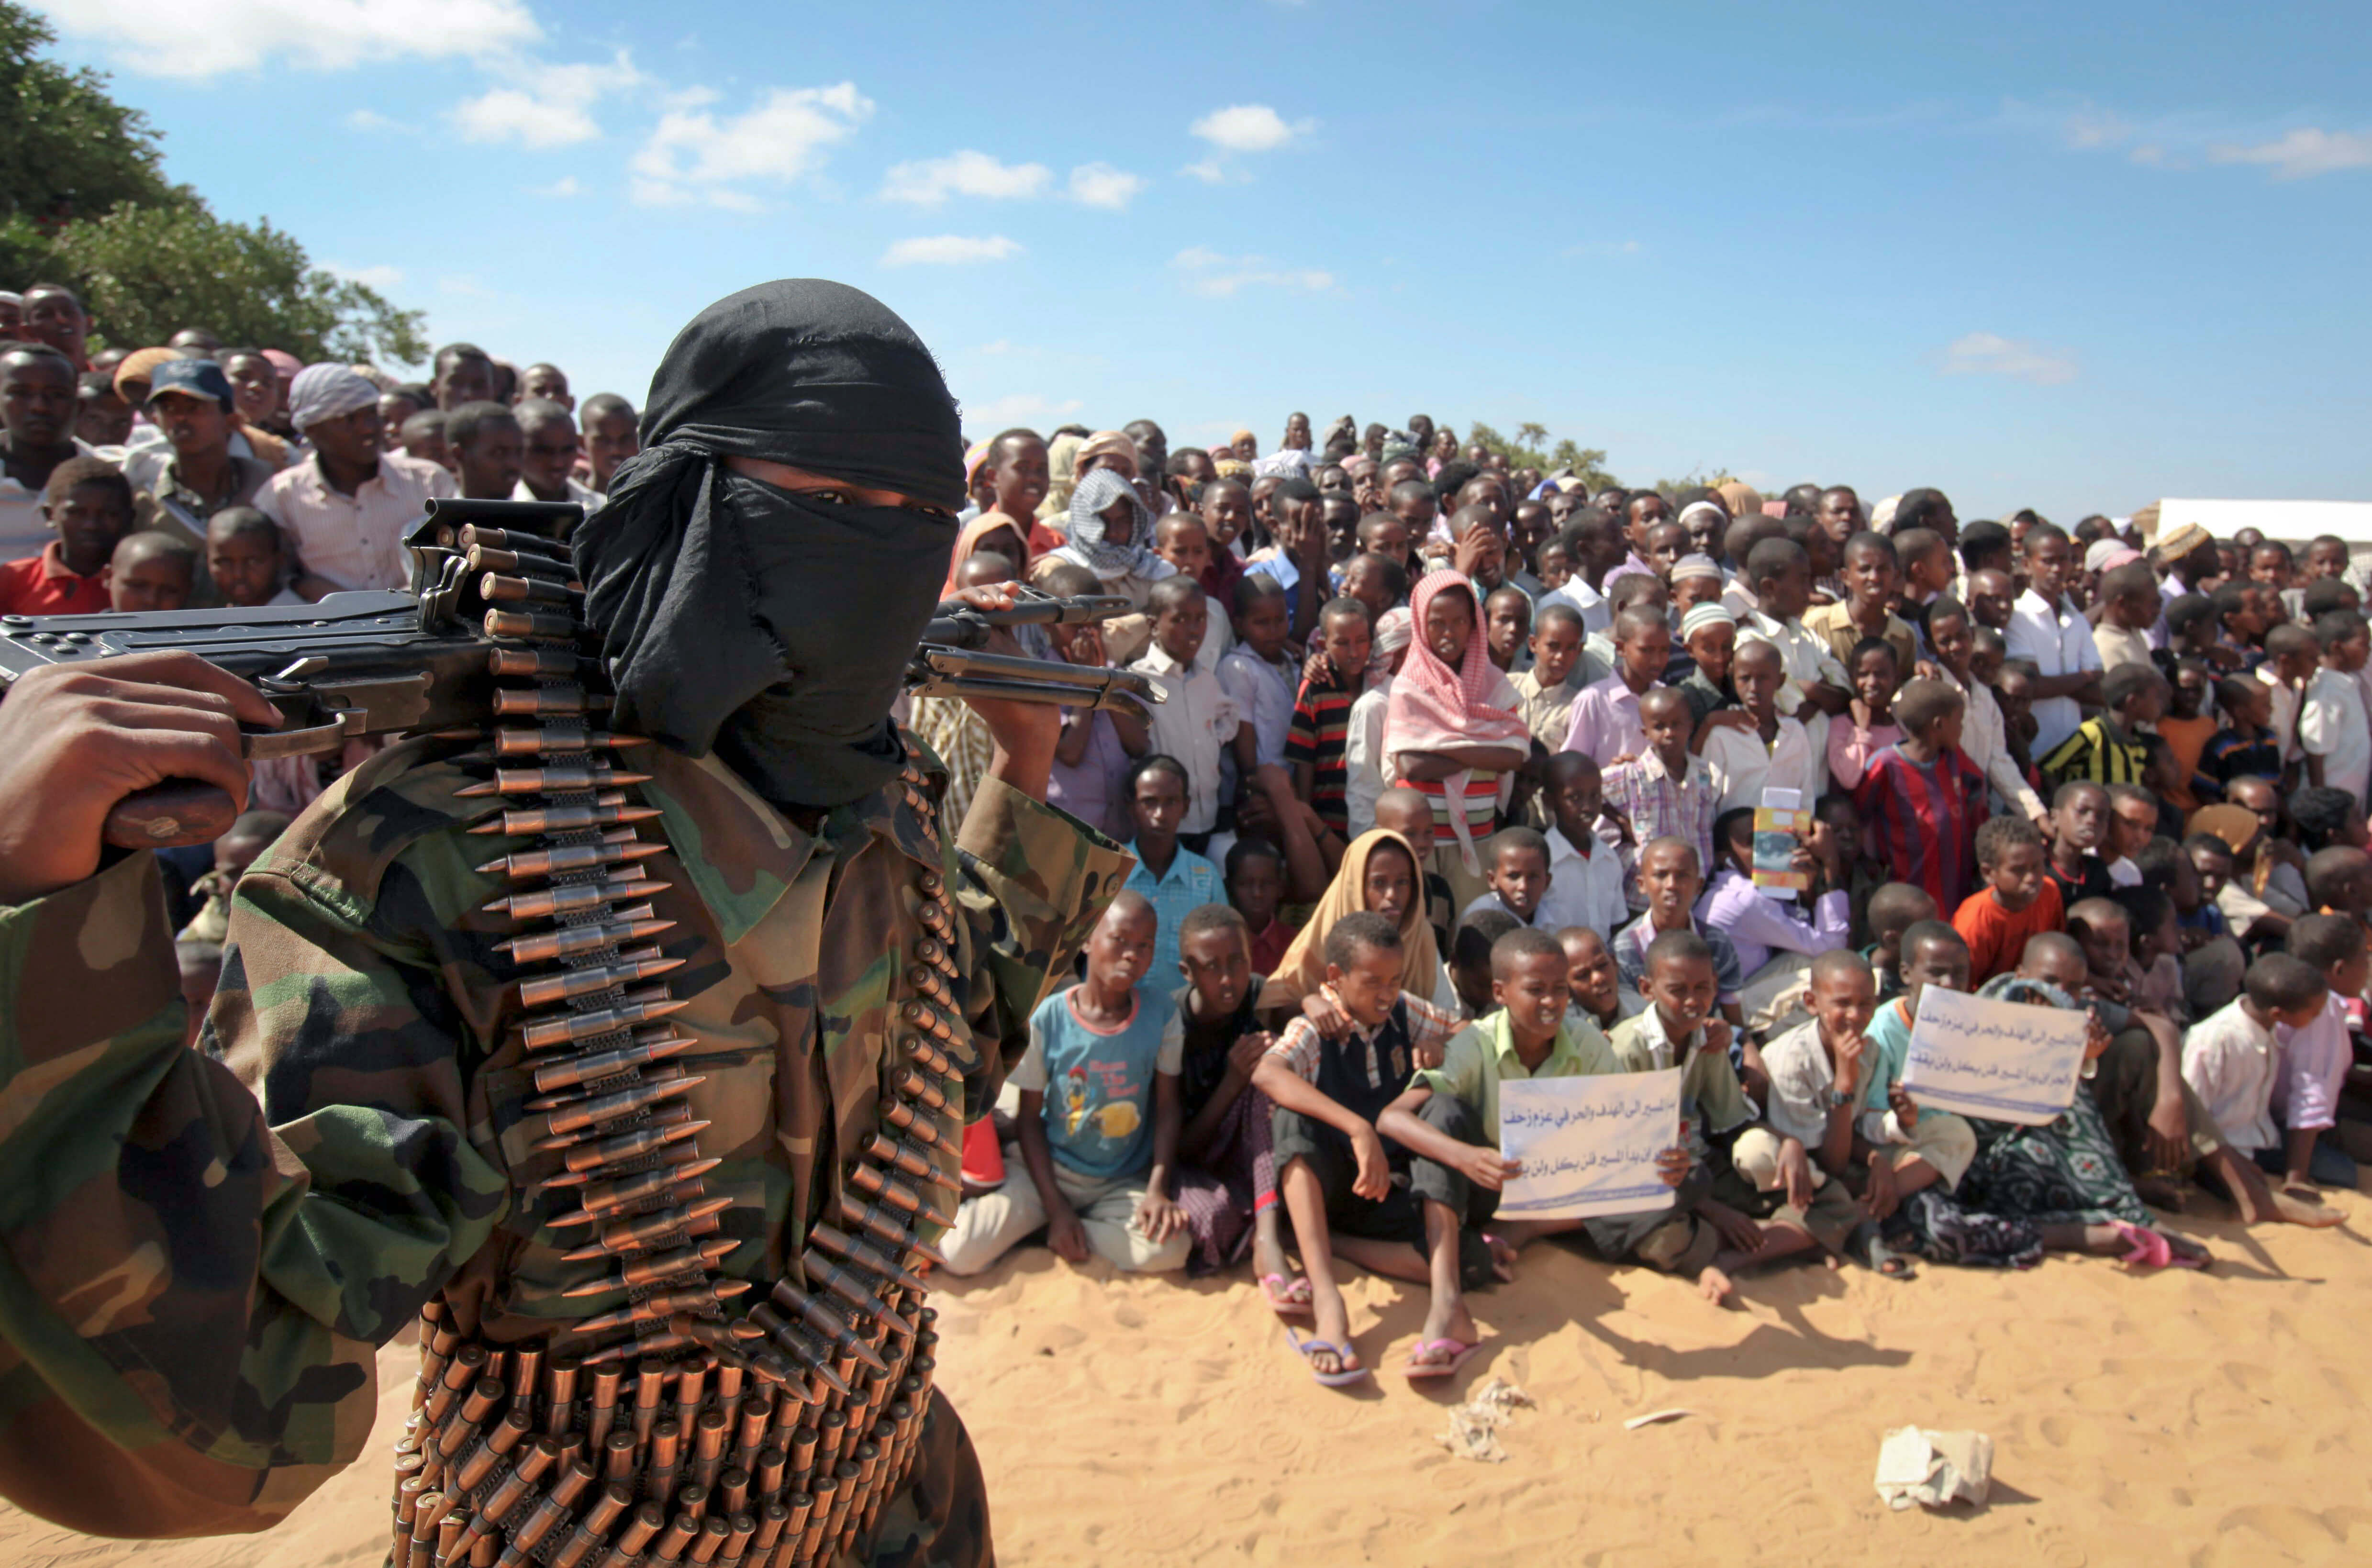 Muslimer, Kristendom, al-Shabaab, Terrorism